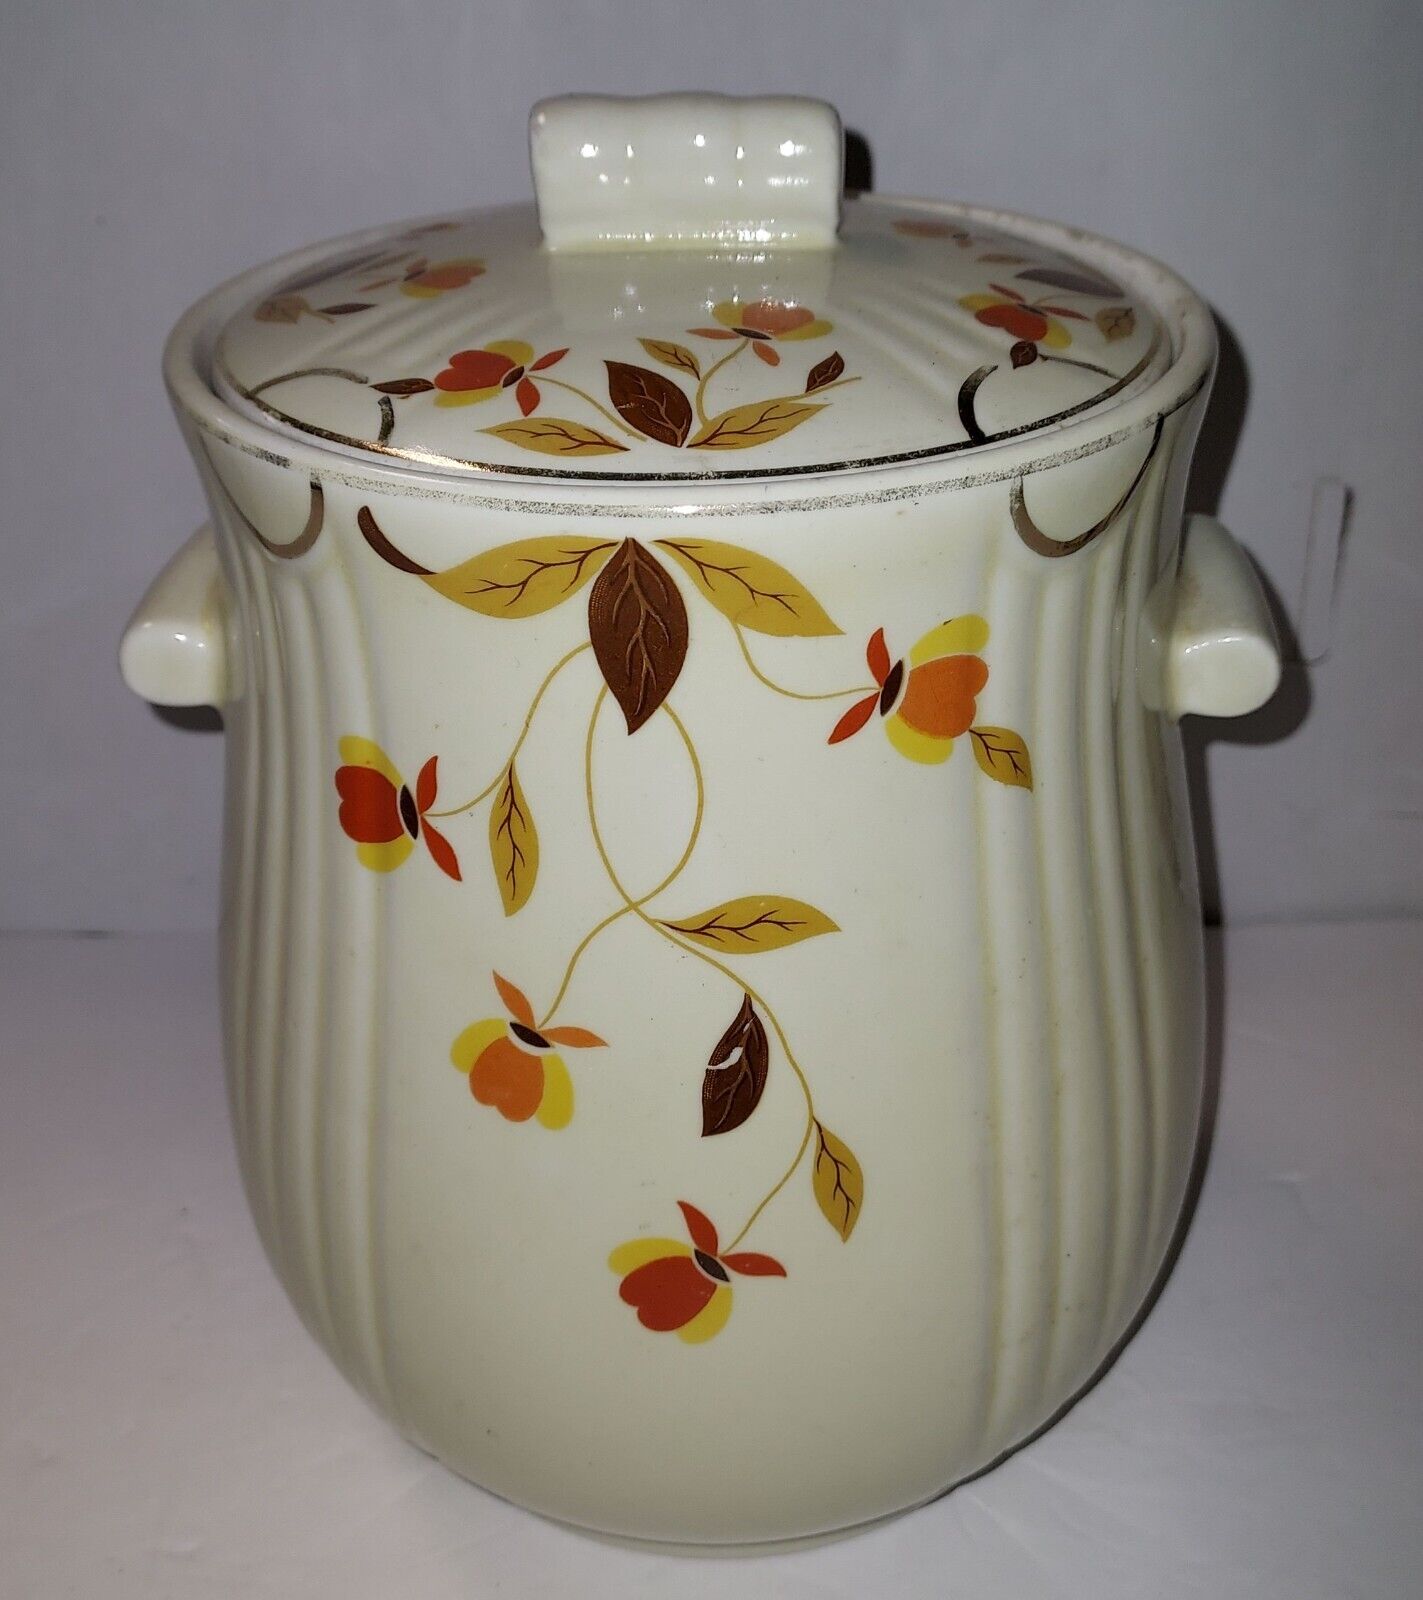 Hall's Superior China Jewel Tea Autumn Leaf Rayed Cookie Jar Lid Canister VTG